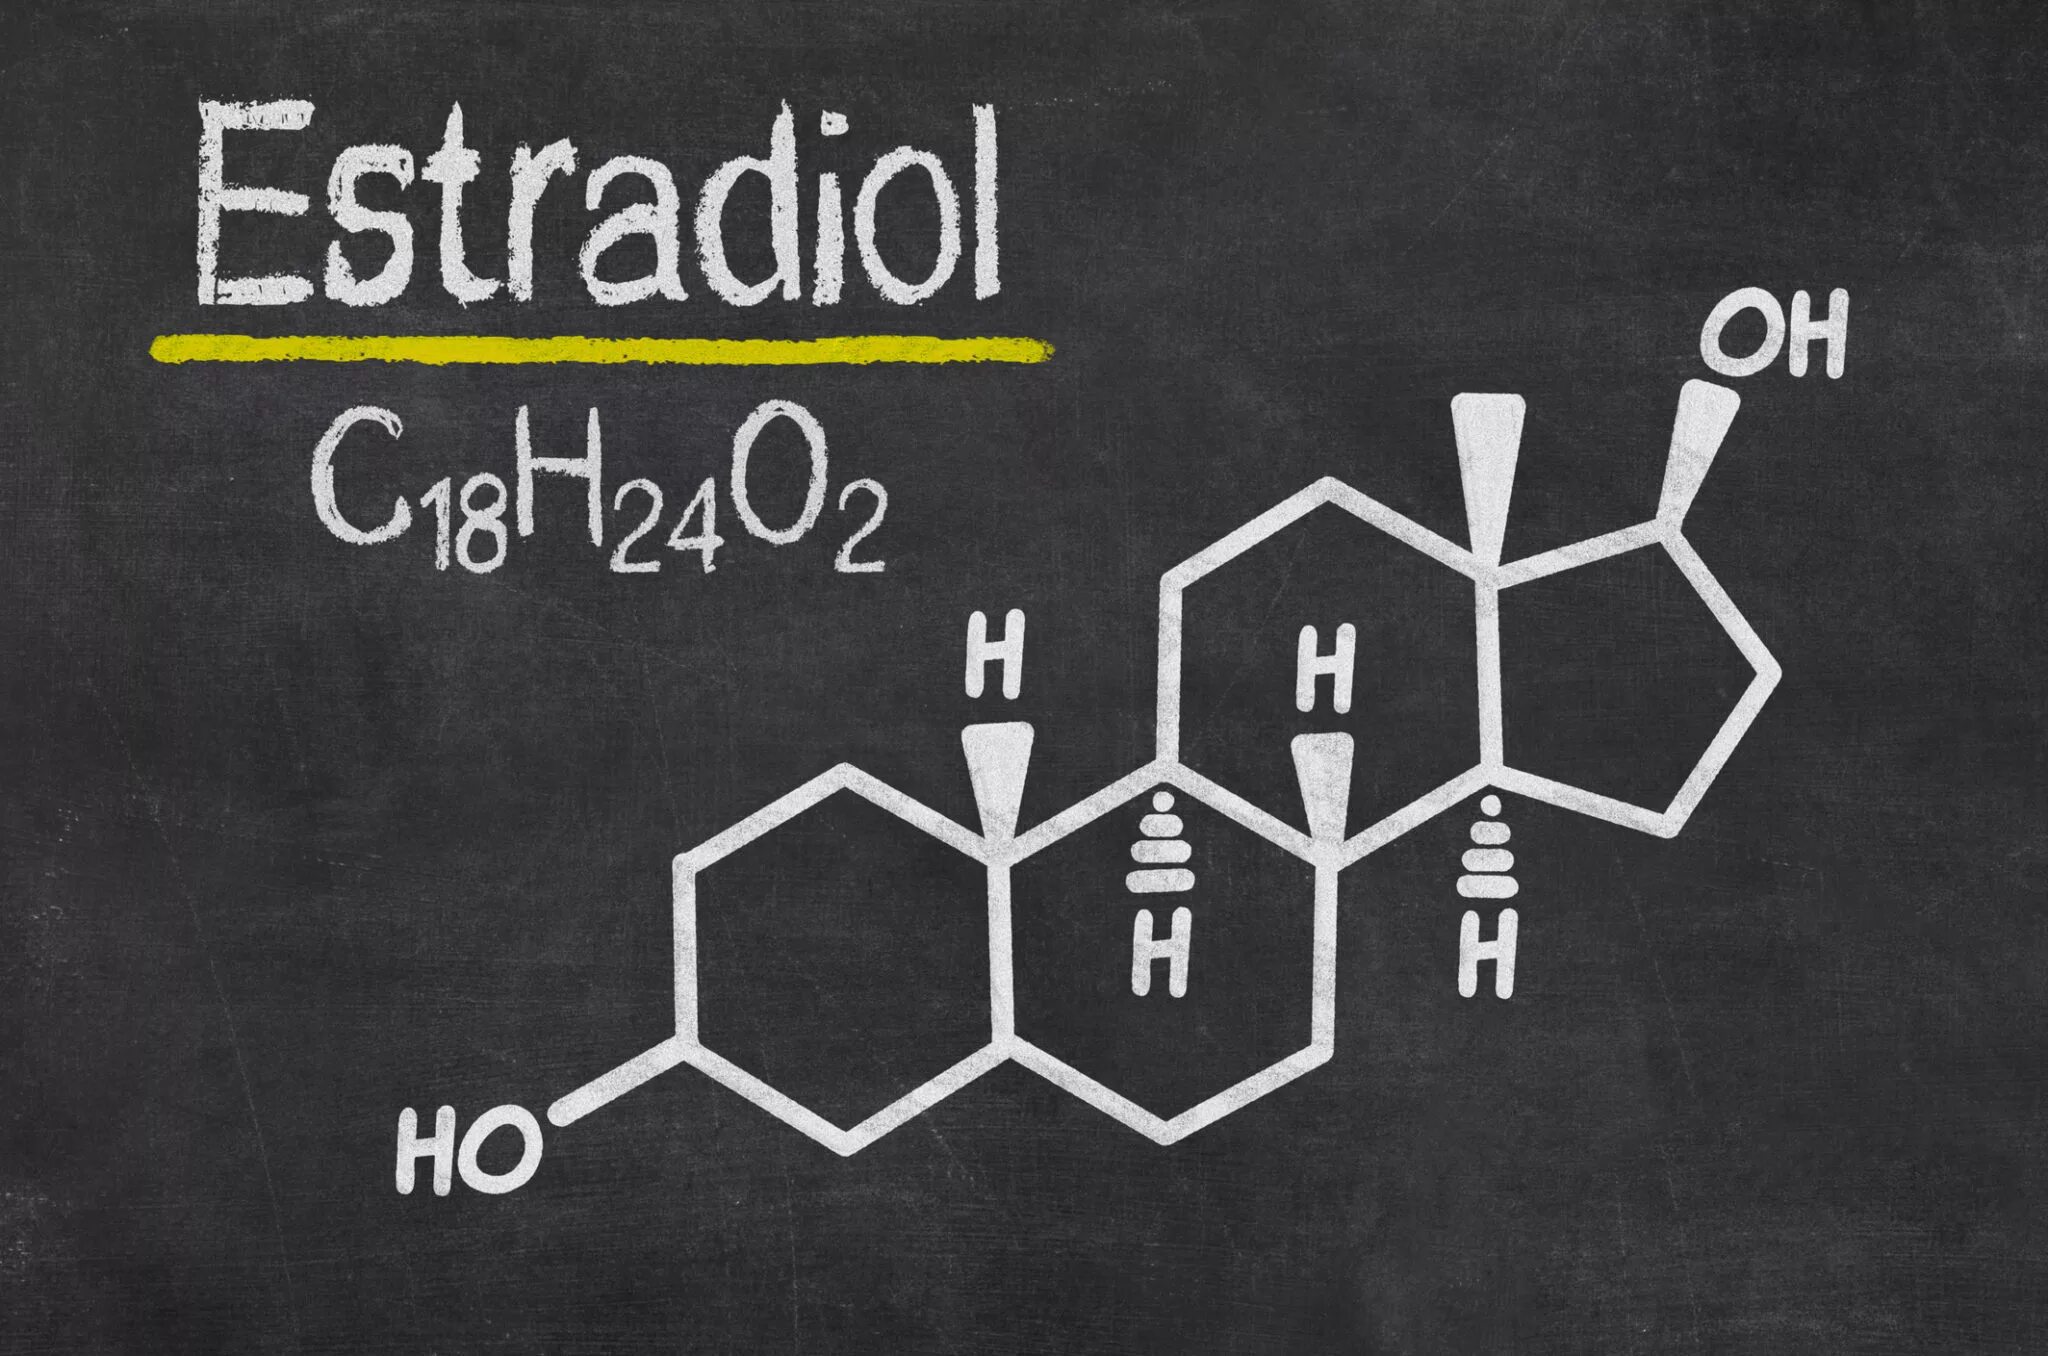 Эстрадиол это эстроген. Эстрадиол химическая формула. Эстрадиол структурная формула. Эстрадиол химическая структура. Эстрадиол химия структурная формула.